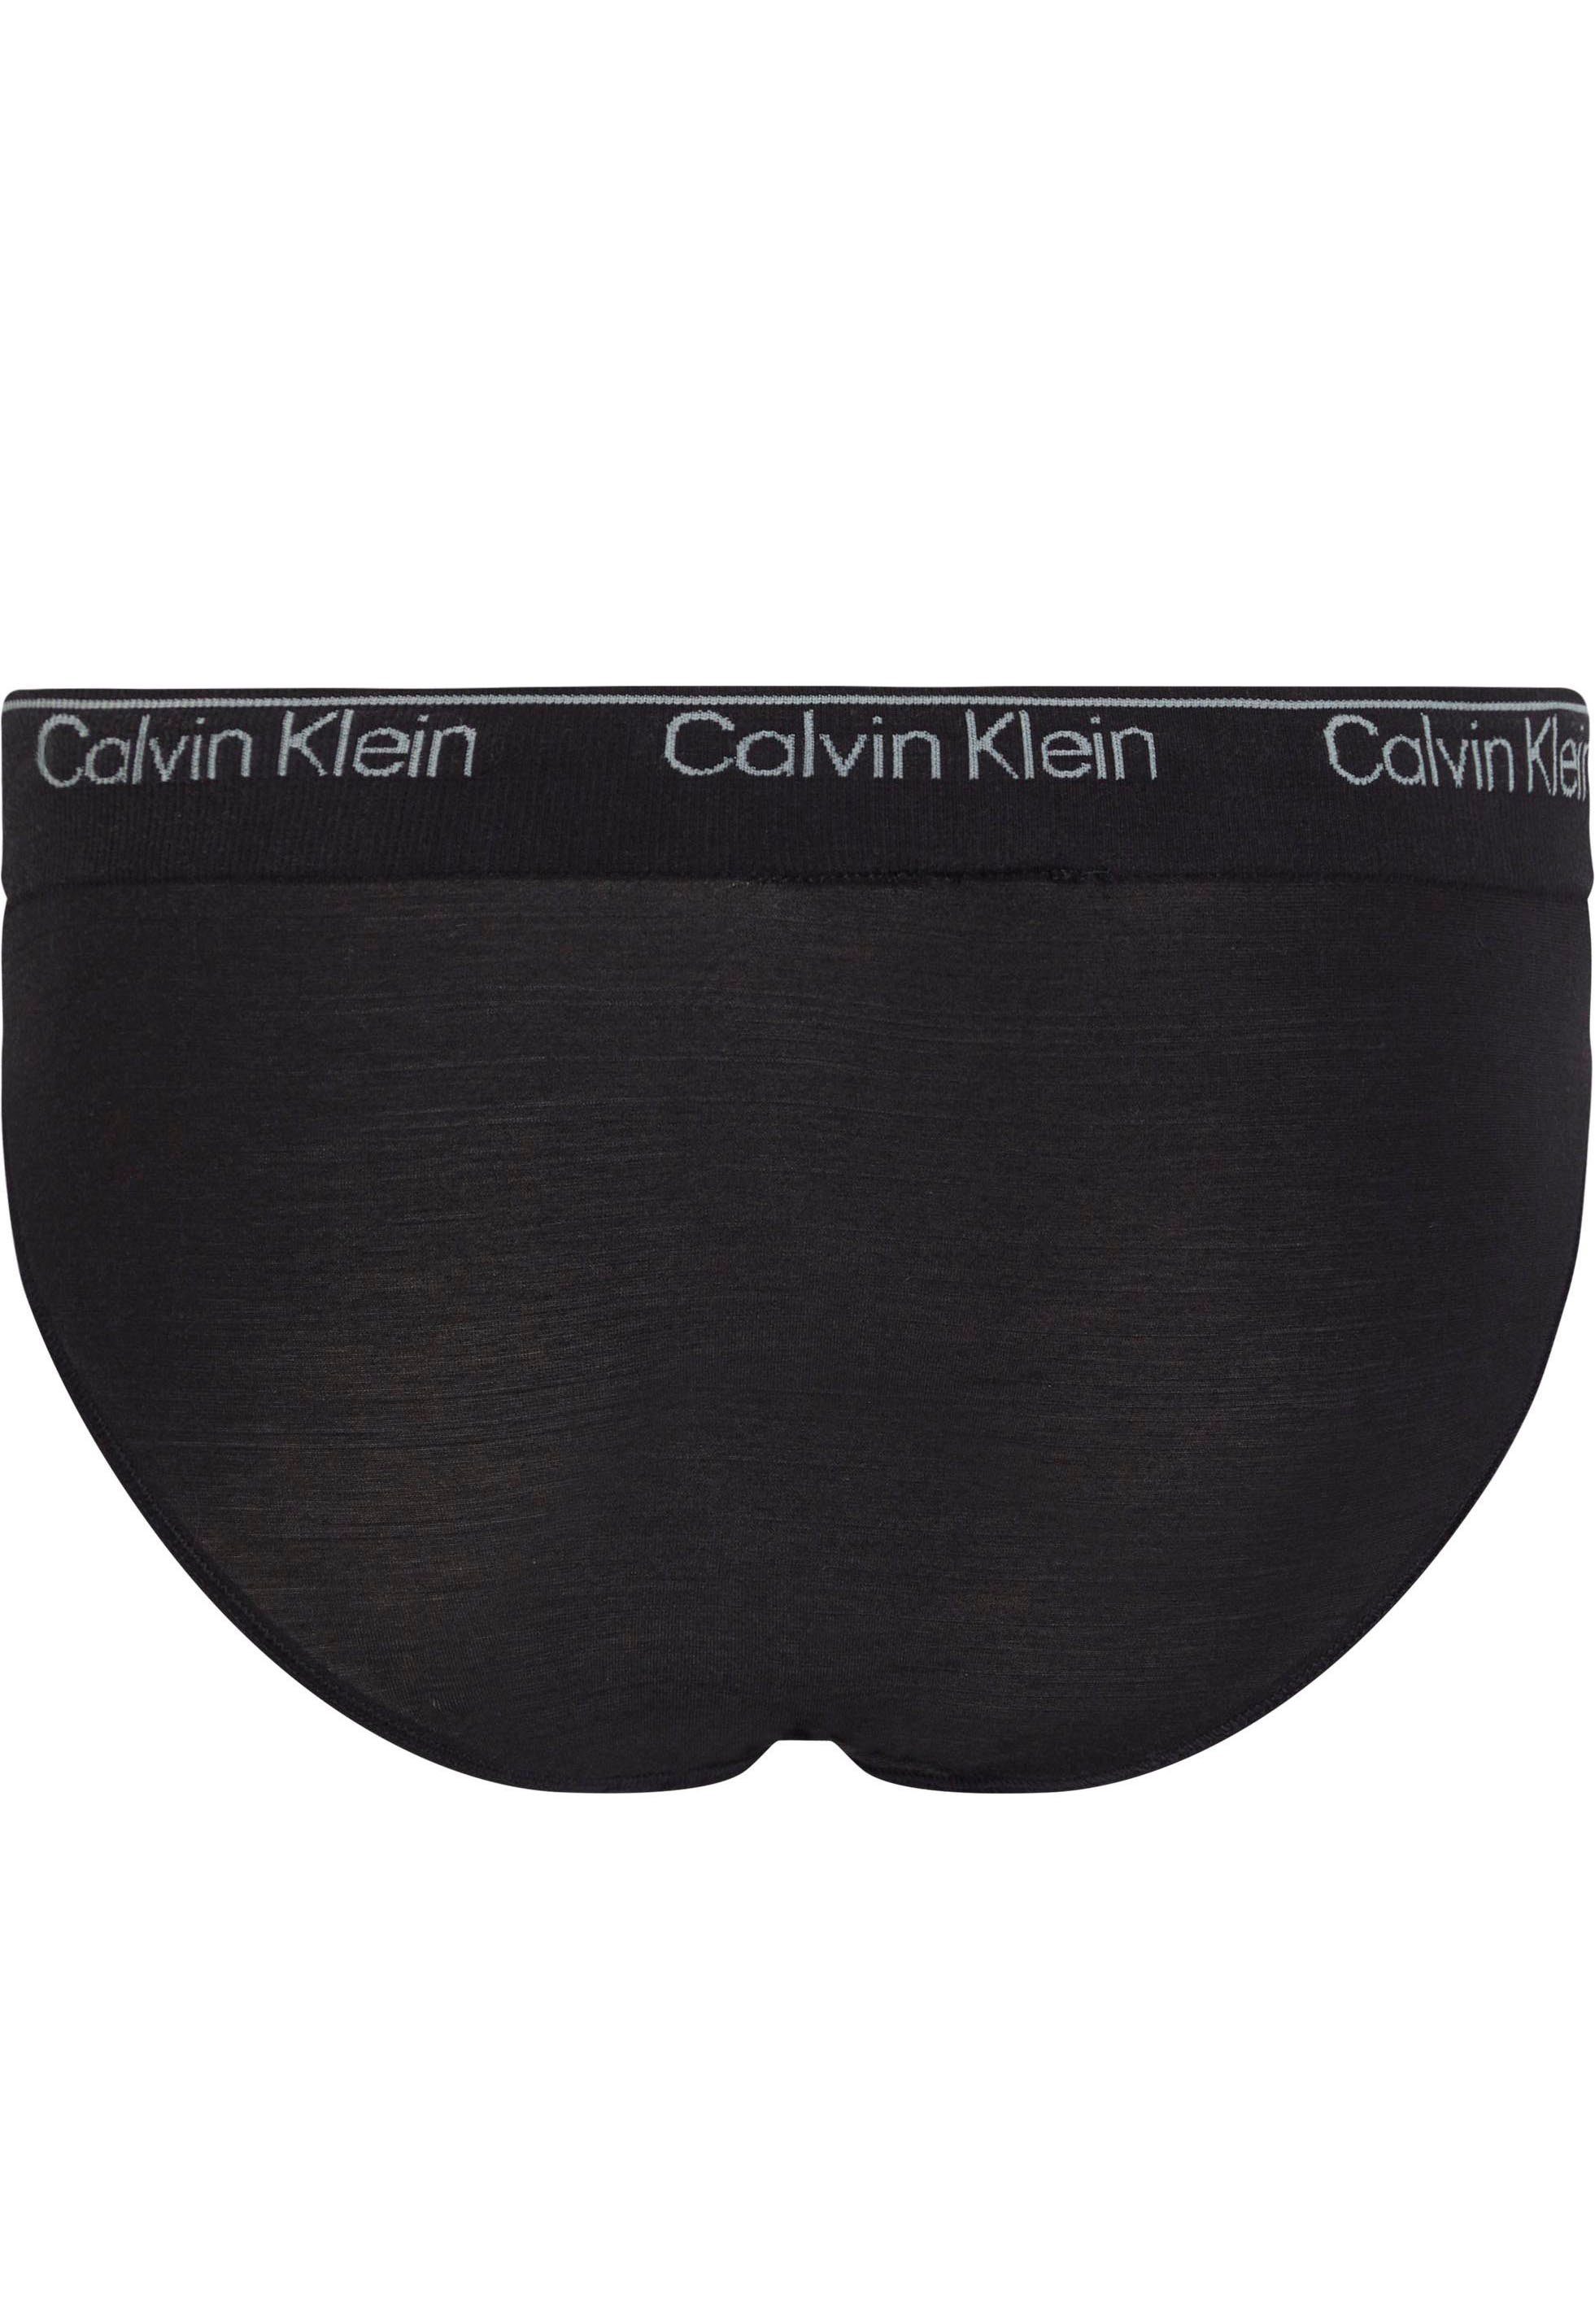 Calvin Klein Underwear Bikinislip schwarz Bund mit CK-Logo BIKINI am